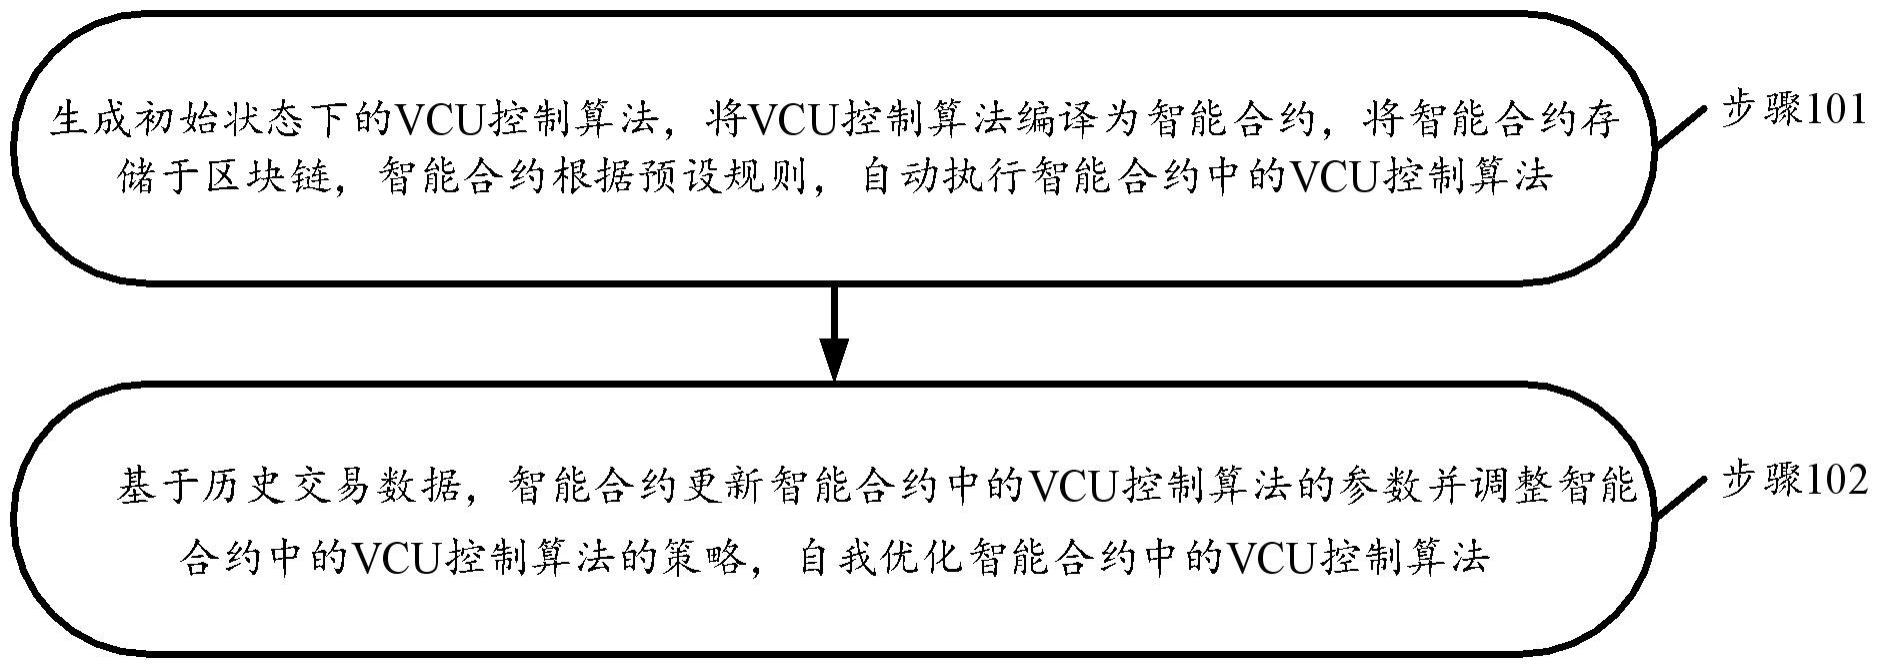 基于区块链的VCU控制算法优化方法和程序产品与流程